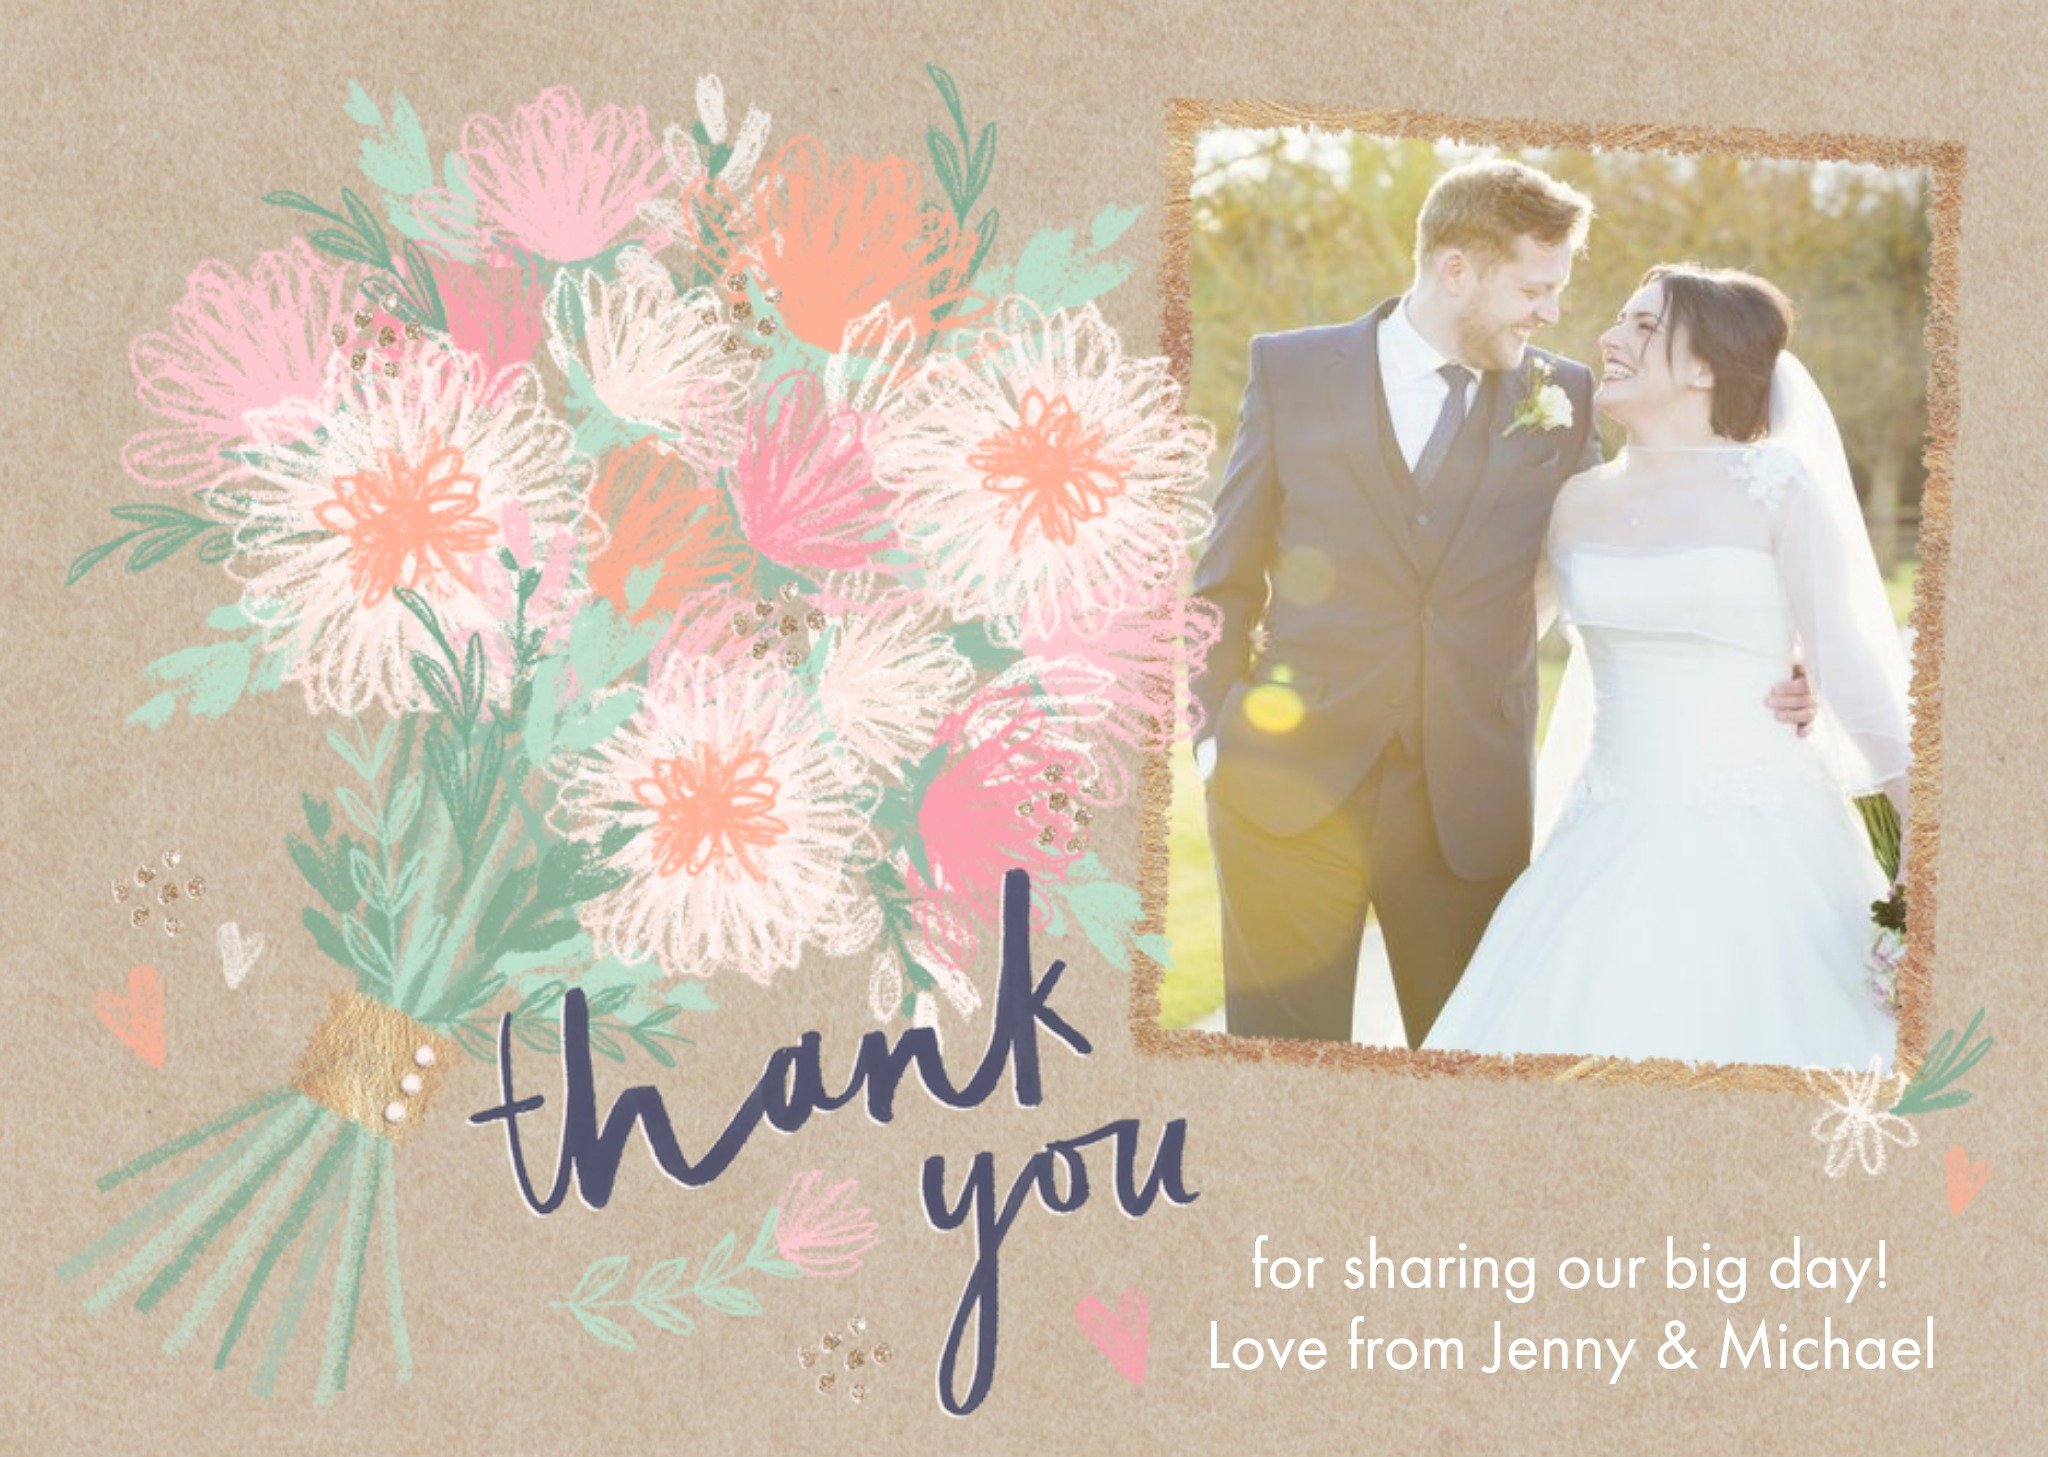 Moonpig Wedding Card - Wedding Day - Wedding Thank You - Photo Upload, Large